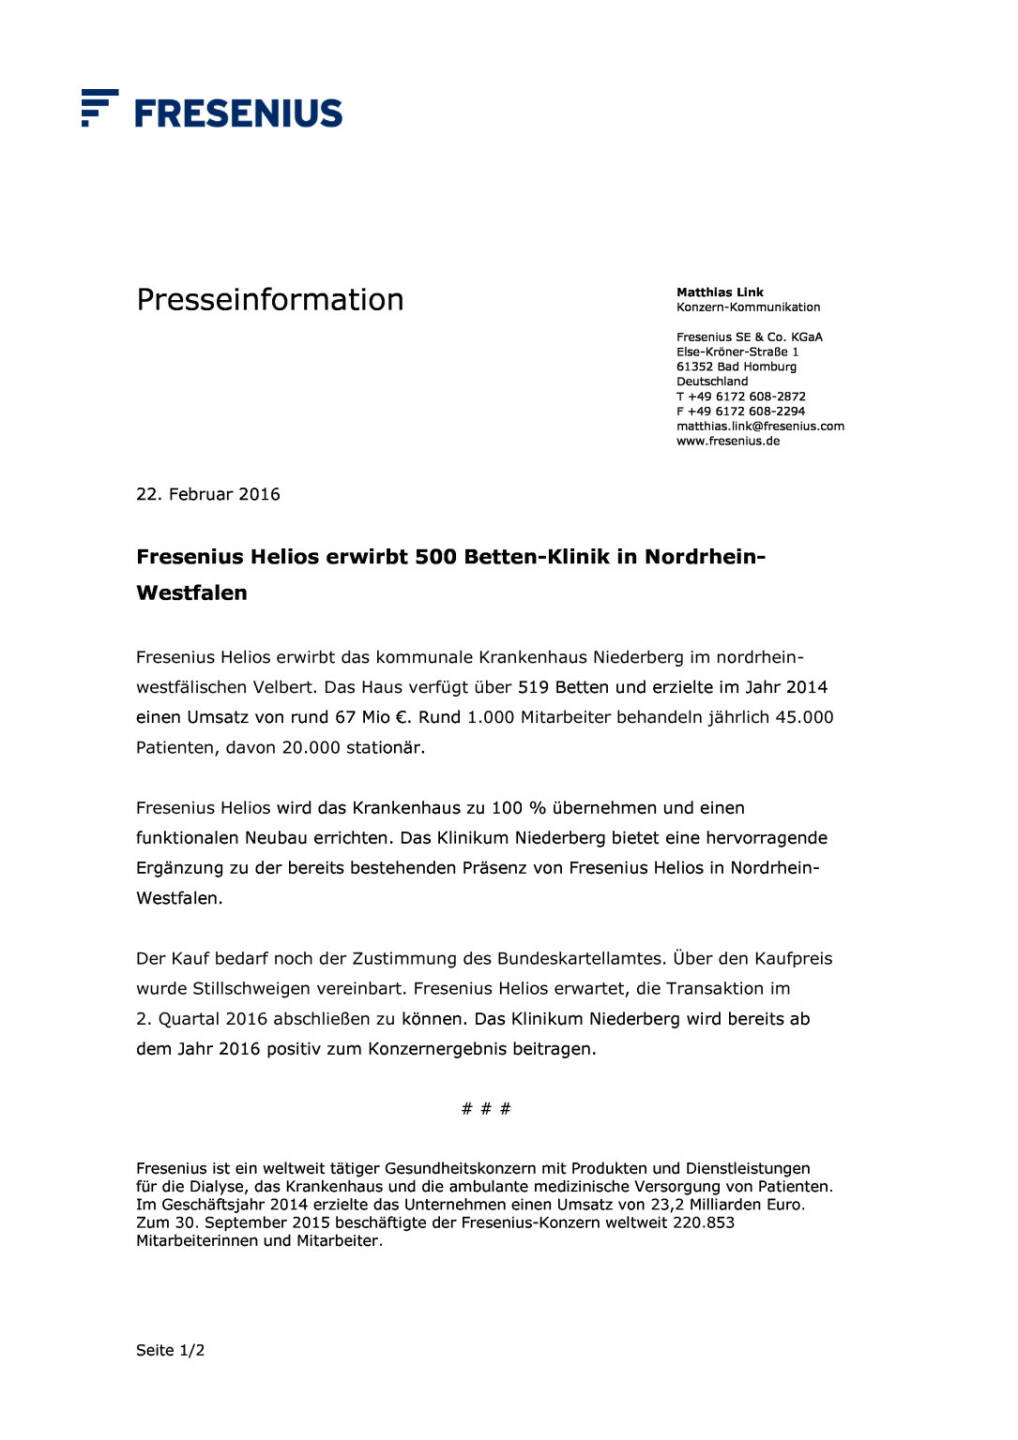 Fresenius erwirbt Klinik in NRW, Seite 1/2, komplettes Dokument unter http://boerse-social.com/static/uploads/file_667_fresenius_erwirbt_klinik_in_nrw.pdf